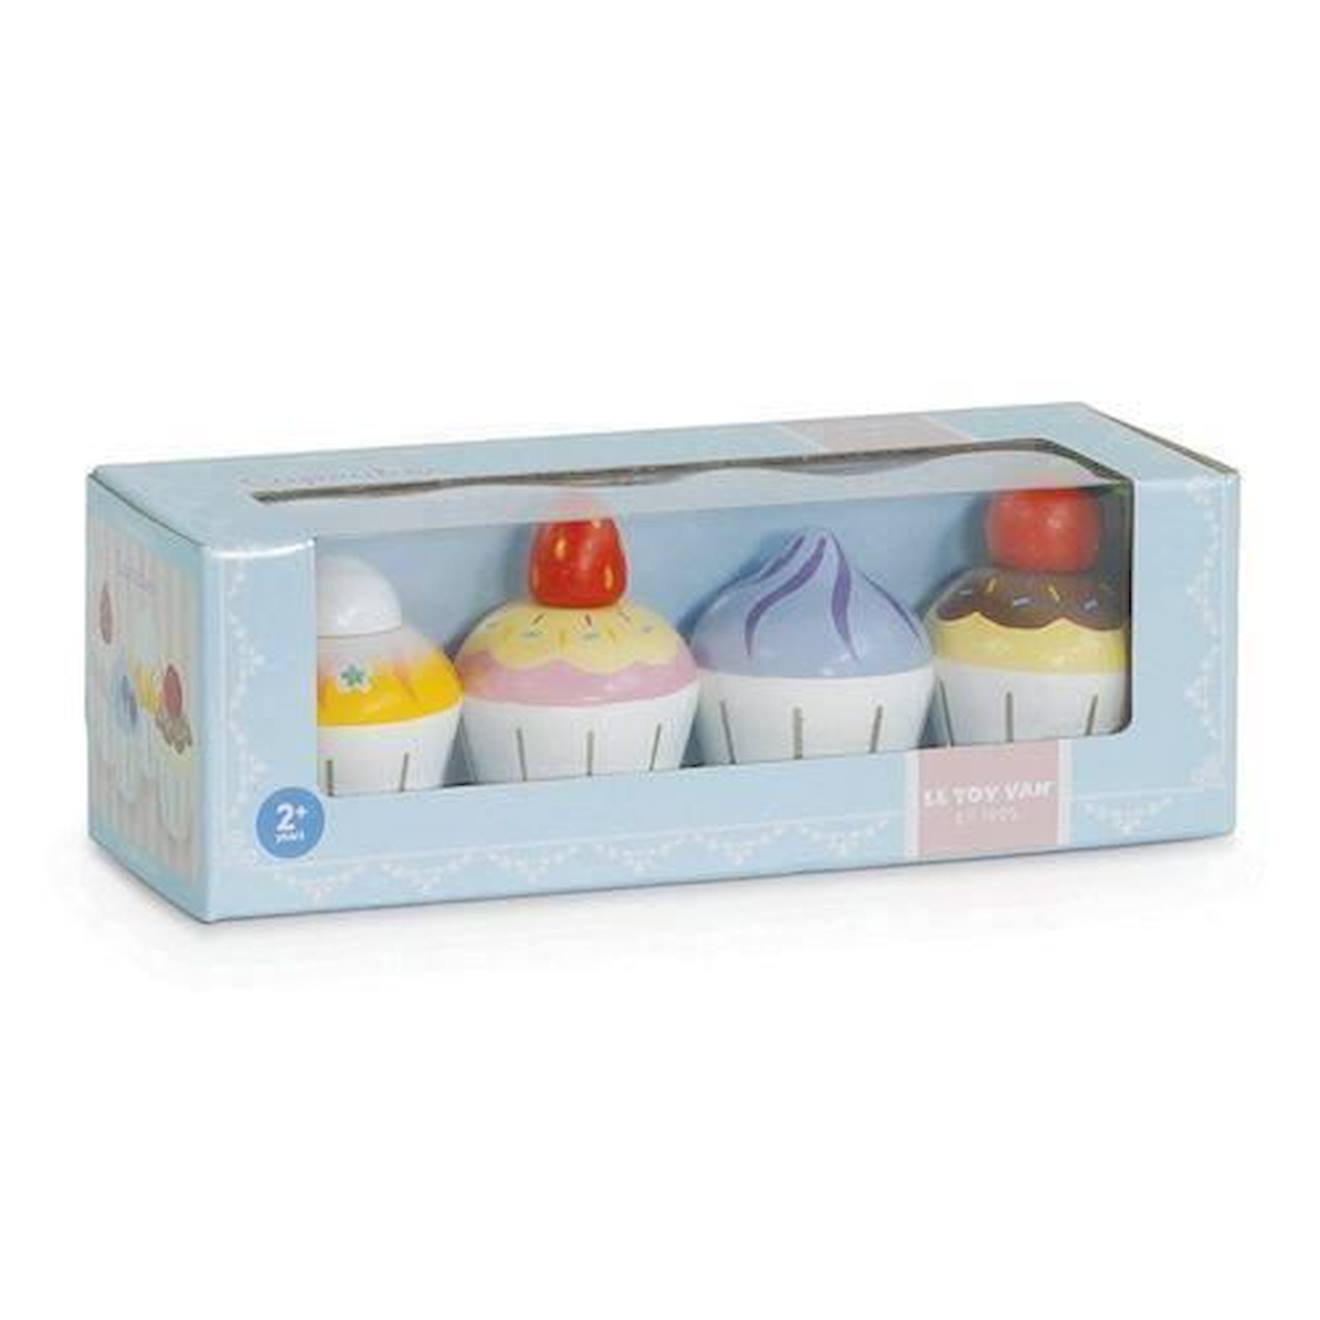 Cupcakes Le Toy Van - Cuisine Pour Enfants - Multicolore - Bois - 24 Mois - 2 Ans - Enfant Bleu